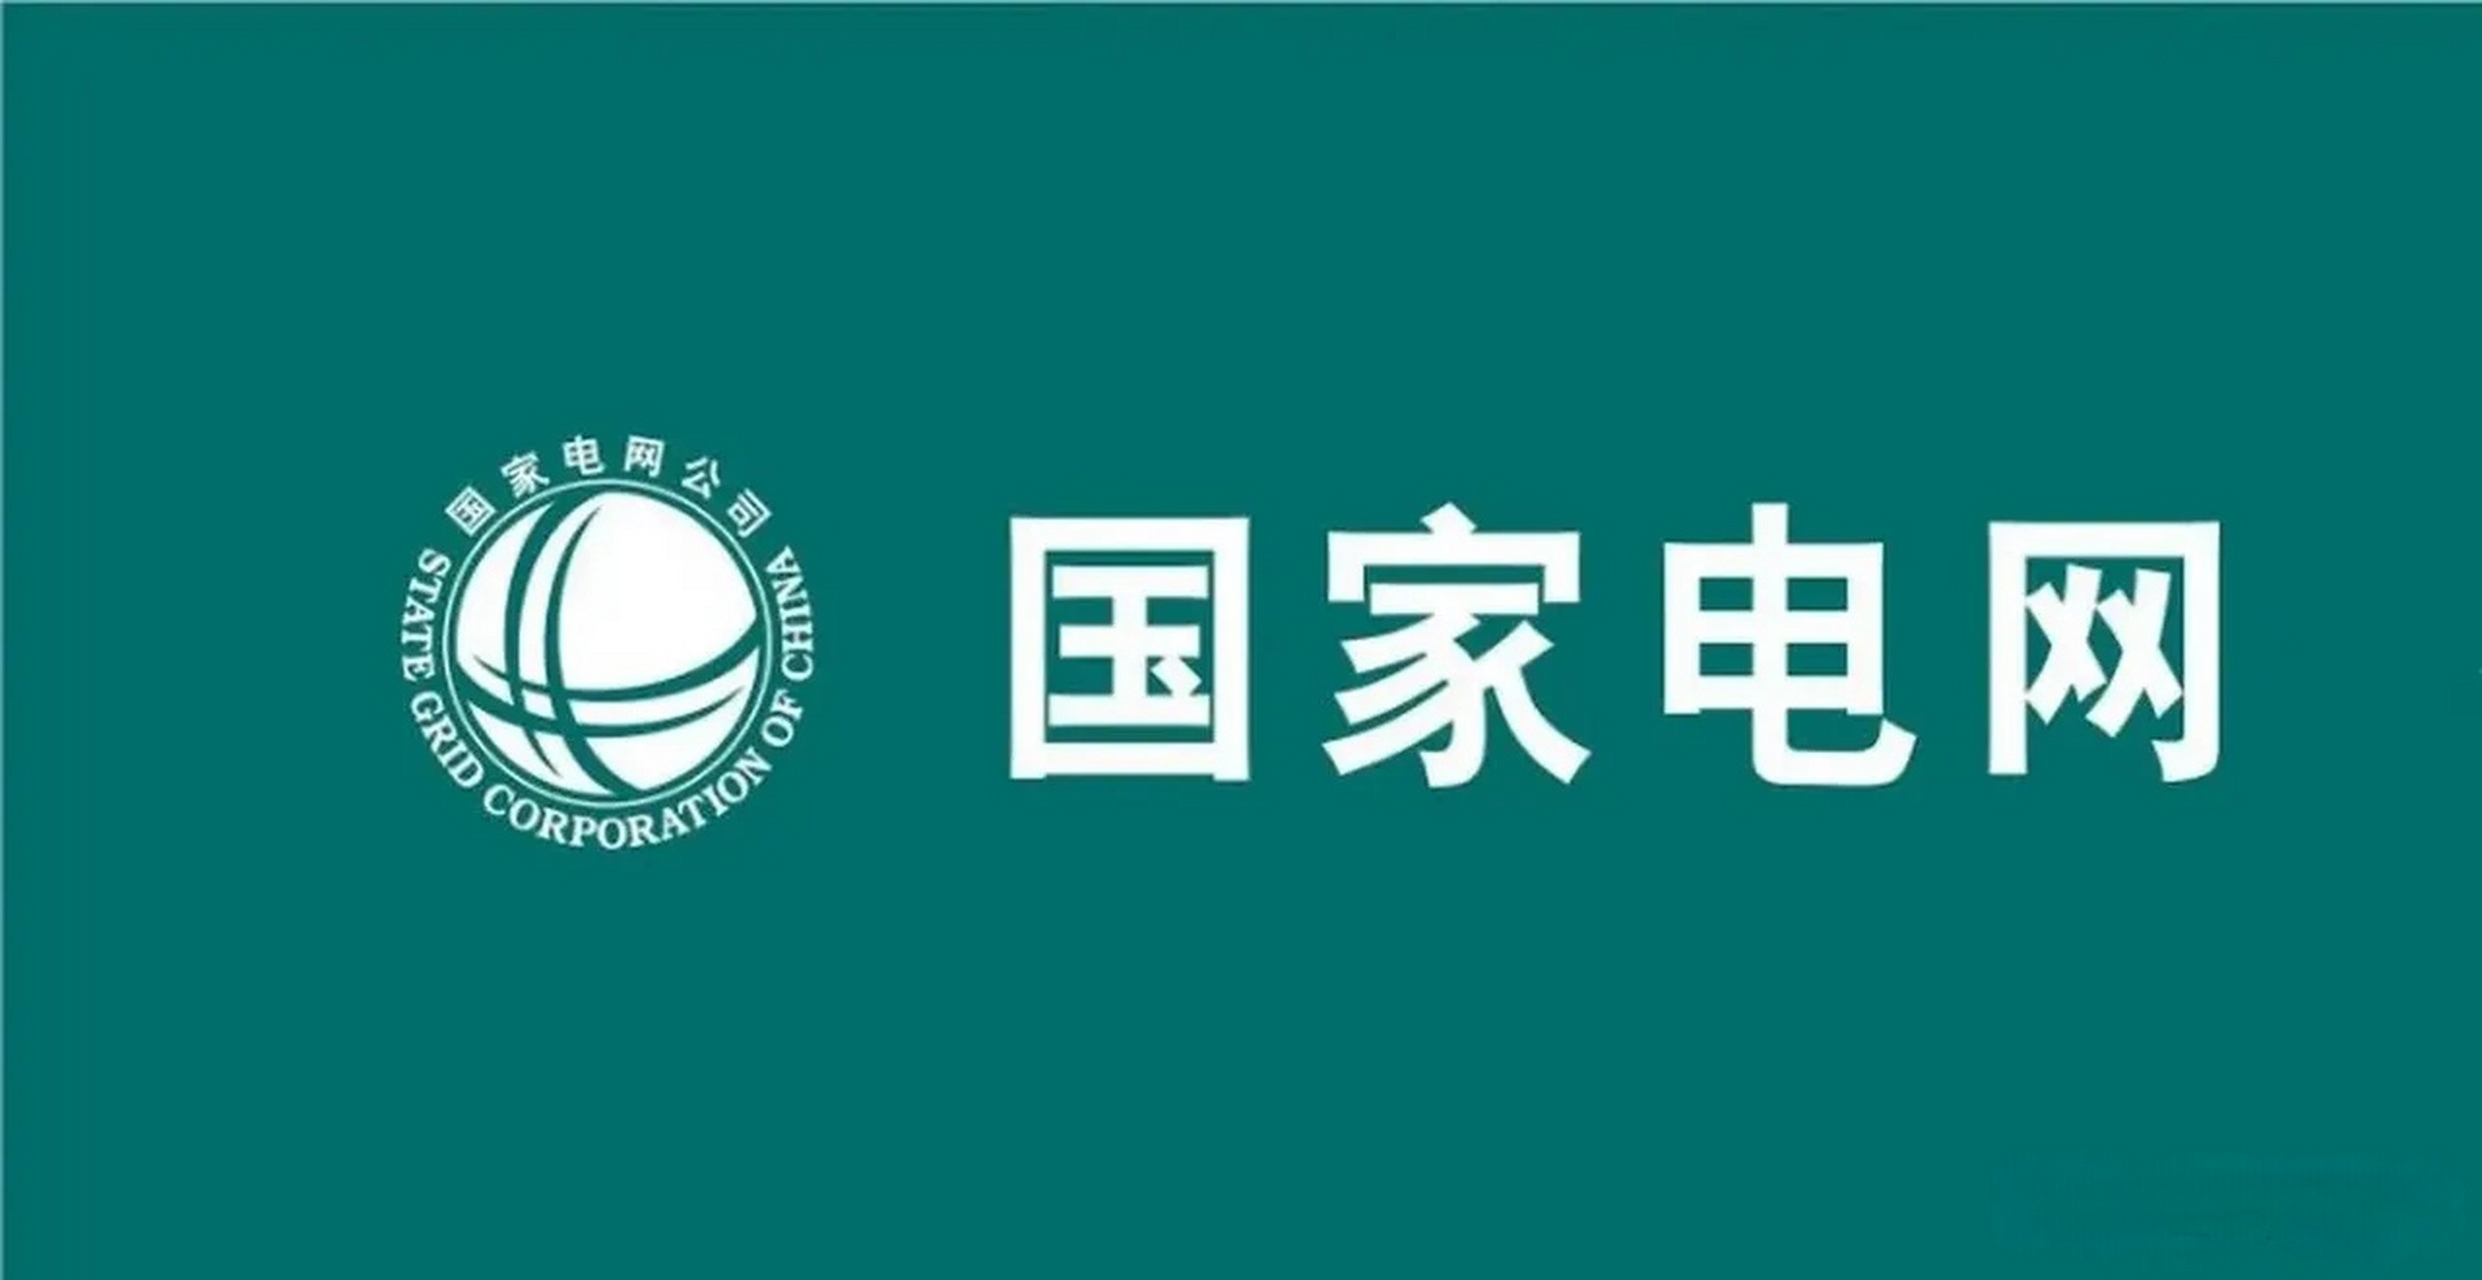 国家电网logo高清图片